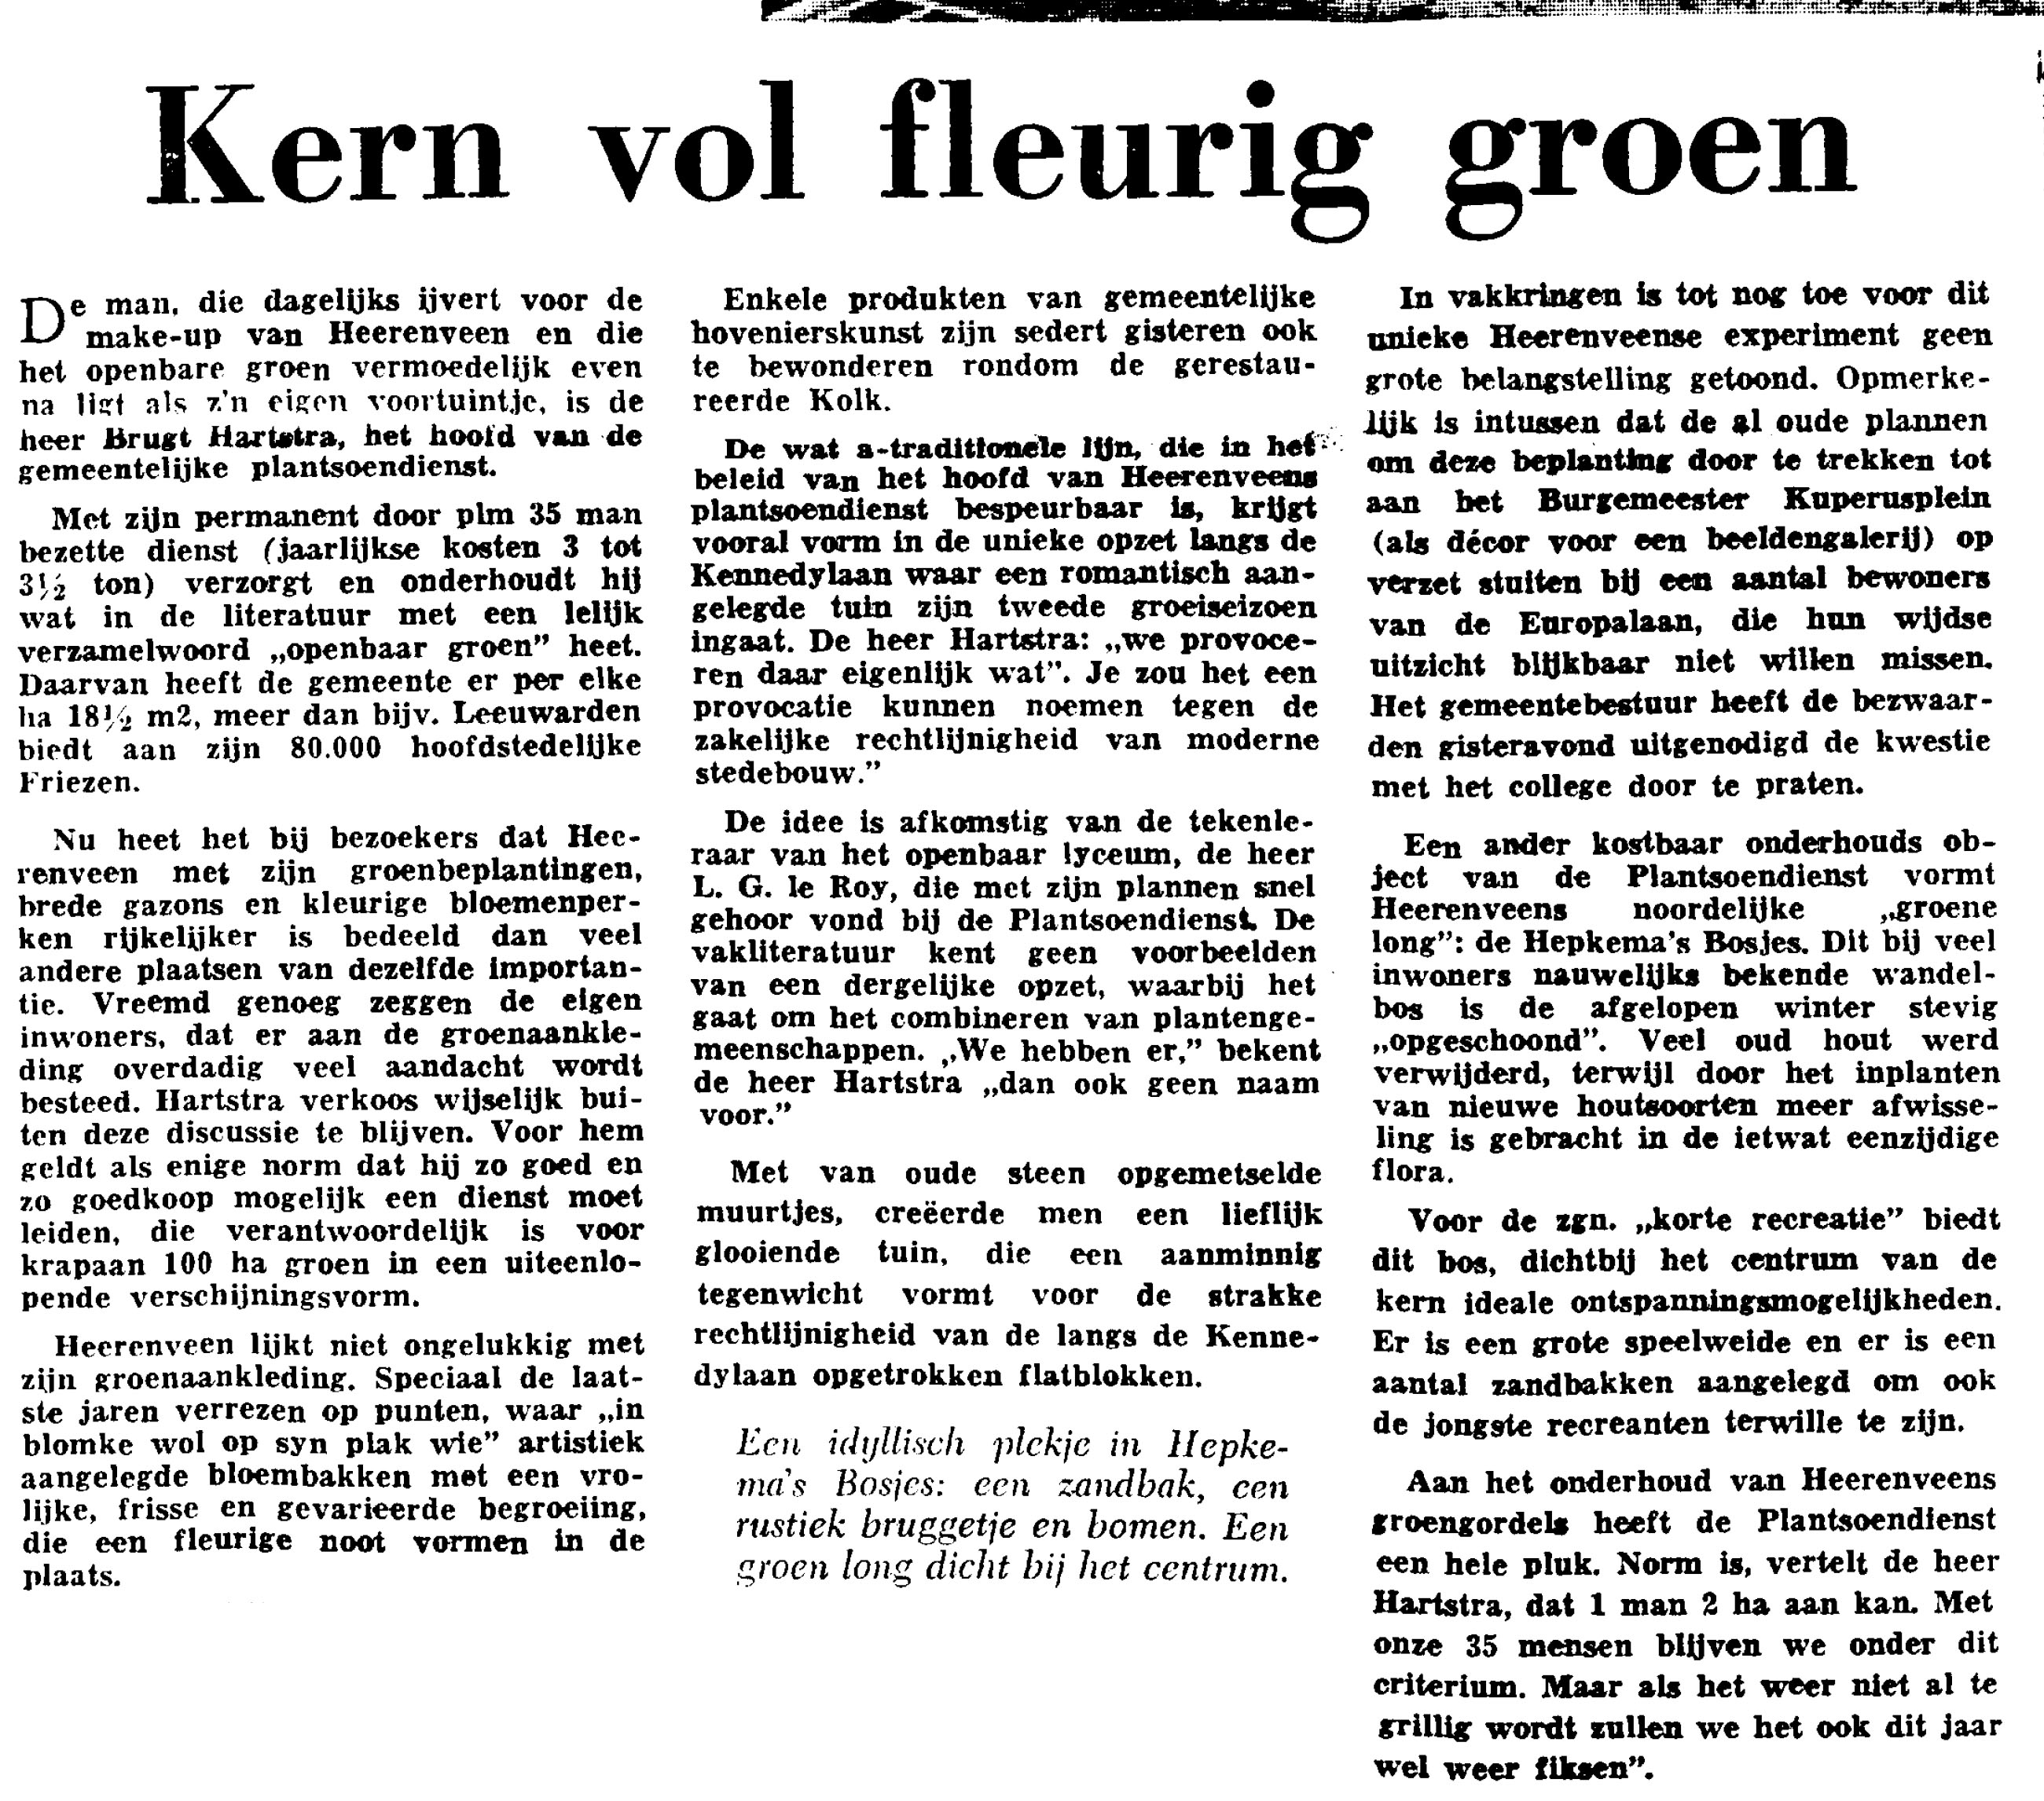 Artikel uit 1968: Brugt Hartstra over groen heerenveen 